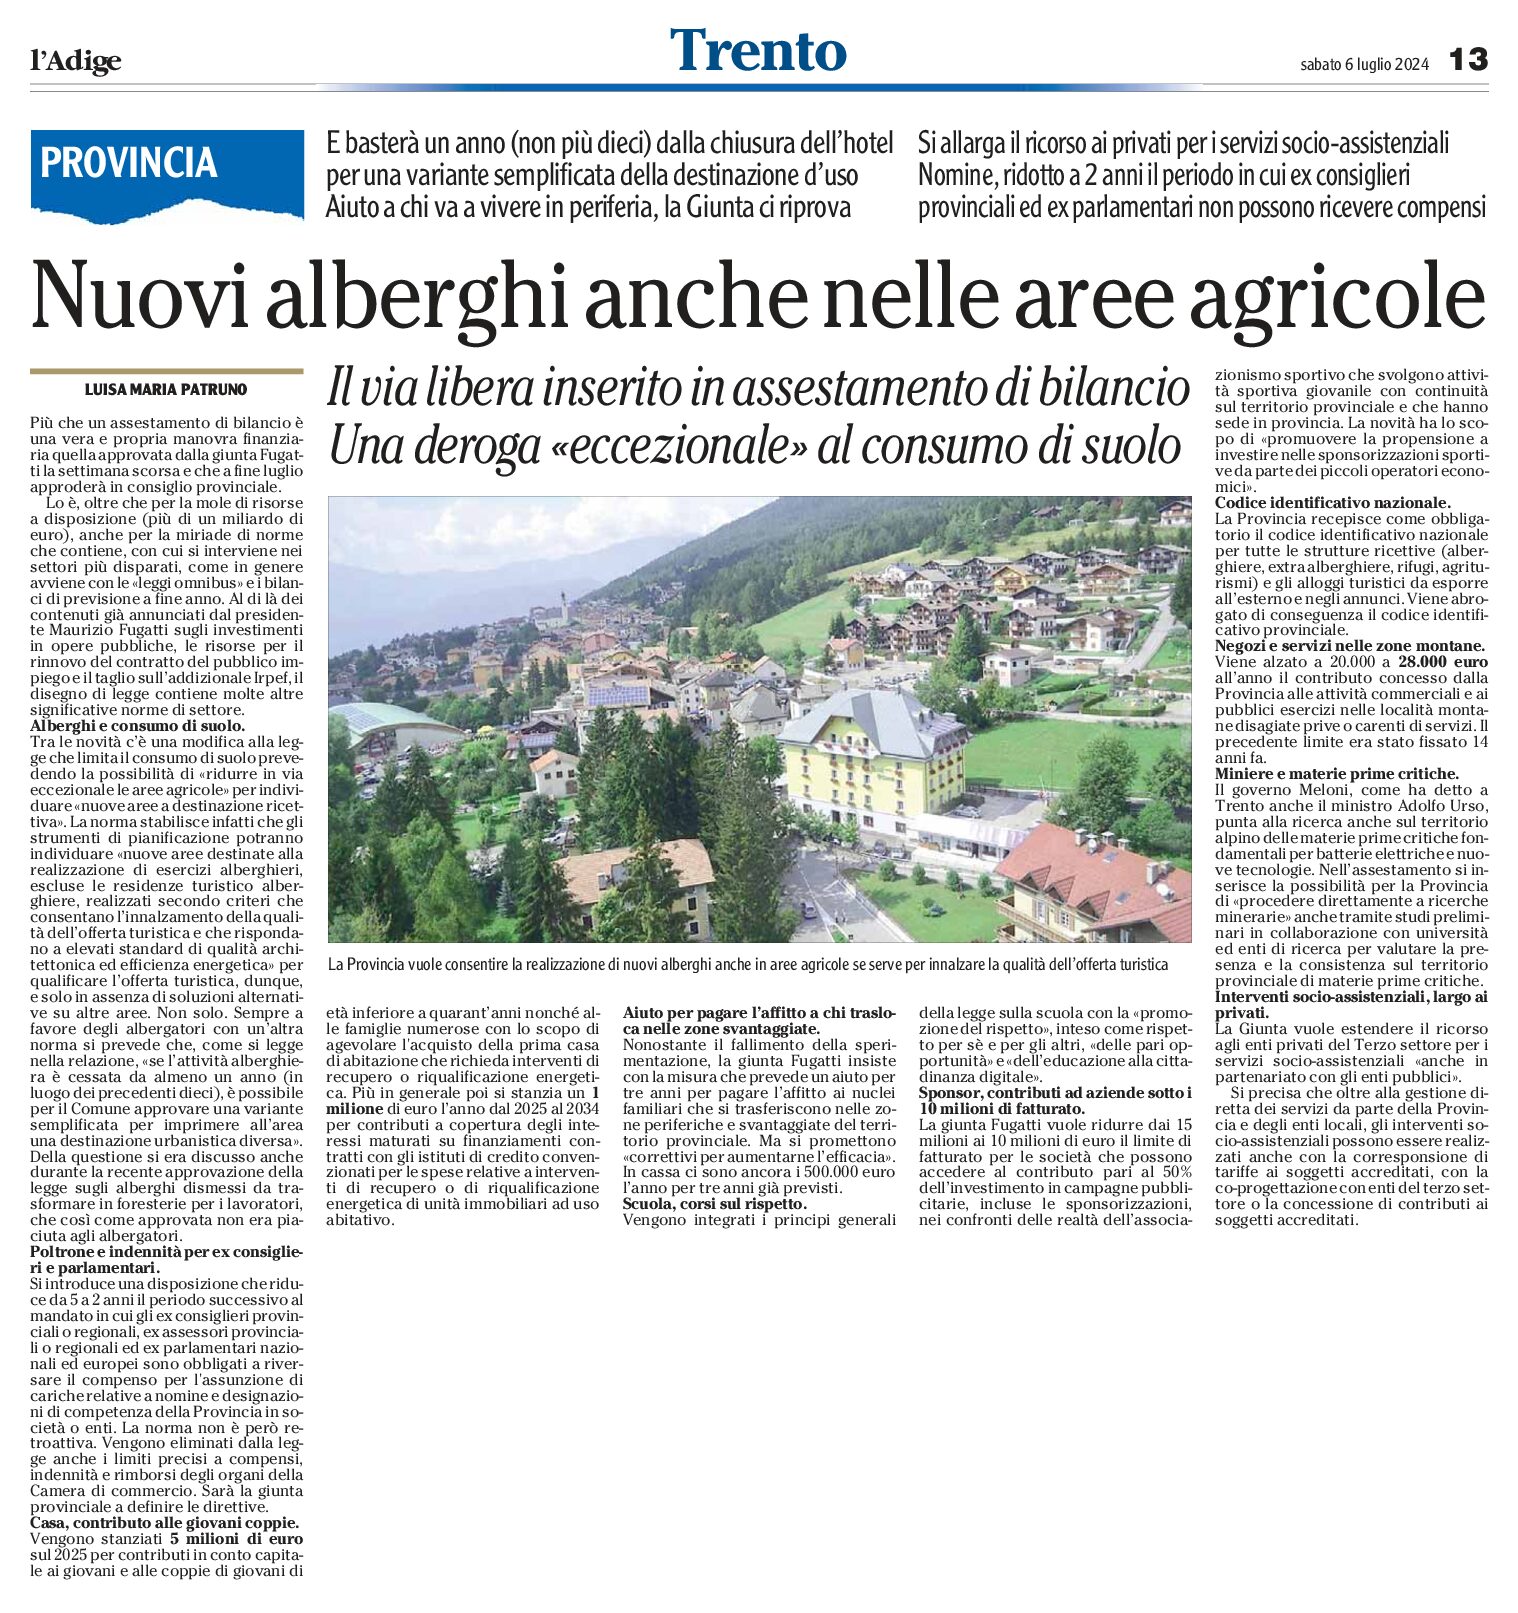 Trento, Provincia: nuovi alberghi anche nelle aree agricole